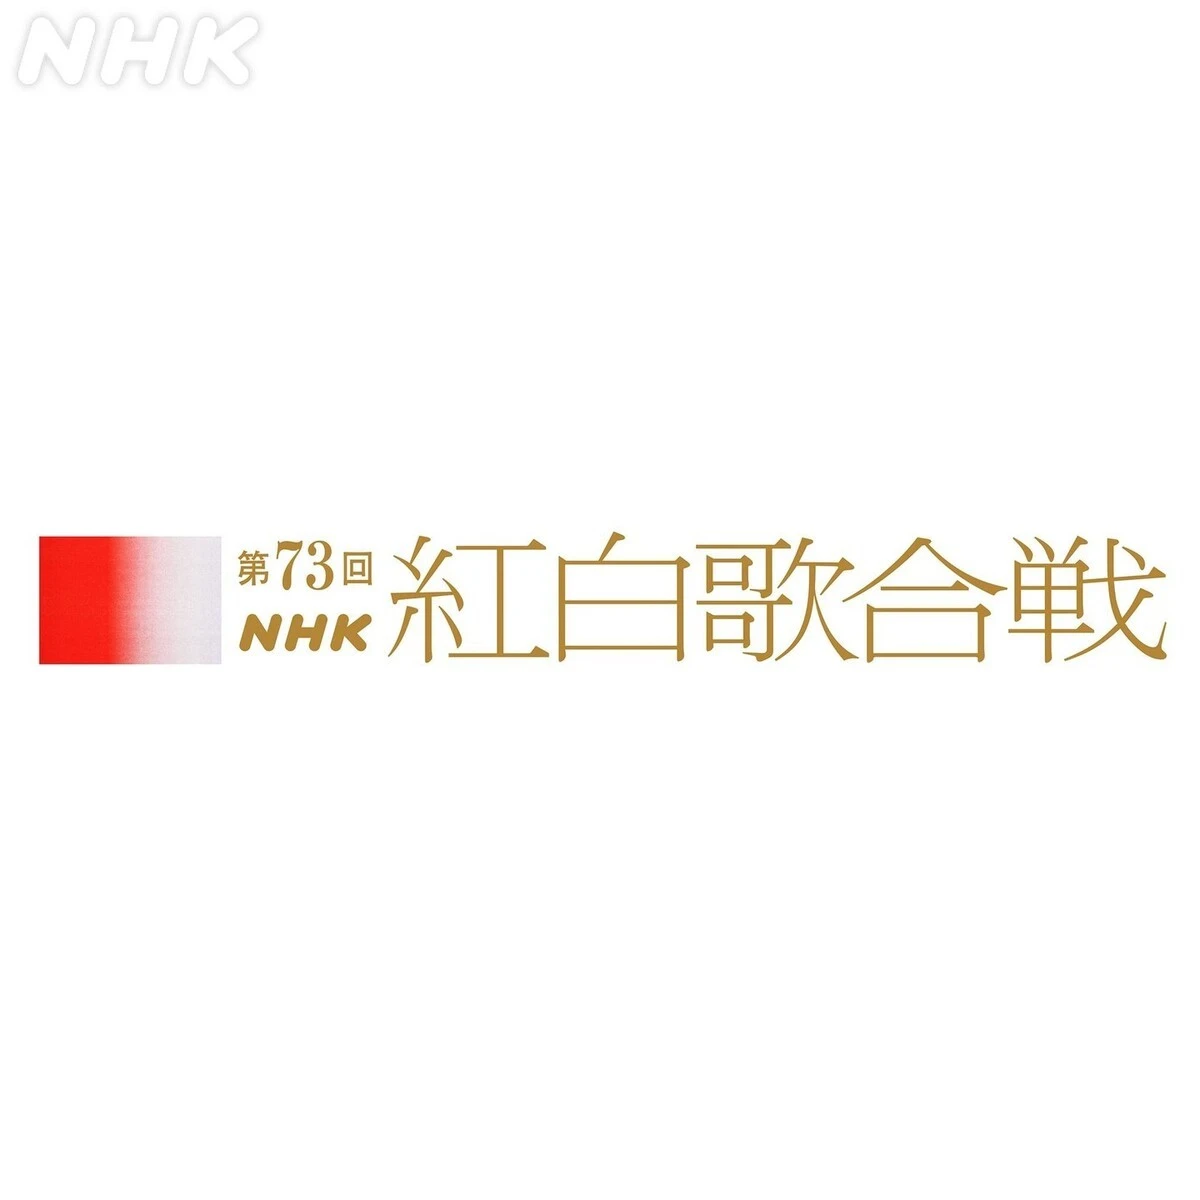 『第73回NHK紅白歌合戦』司会が大泉洋、橋本環奈、櫻井翔、桑子真帆に決定